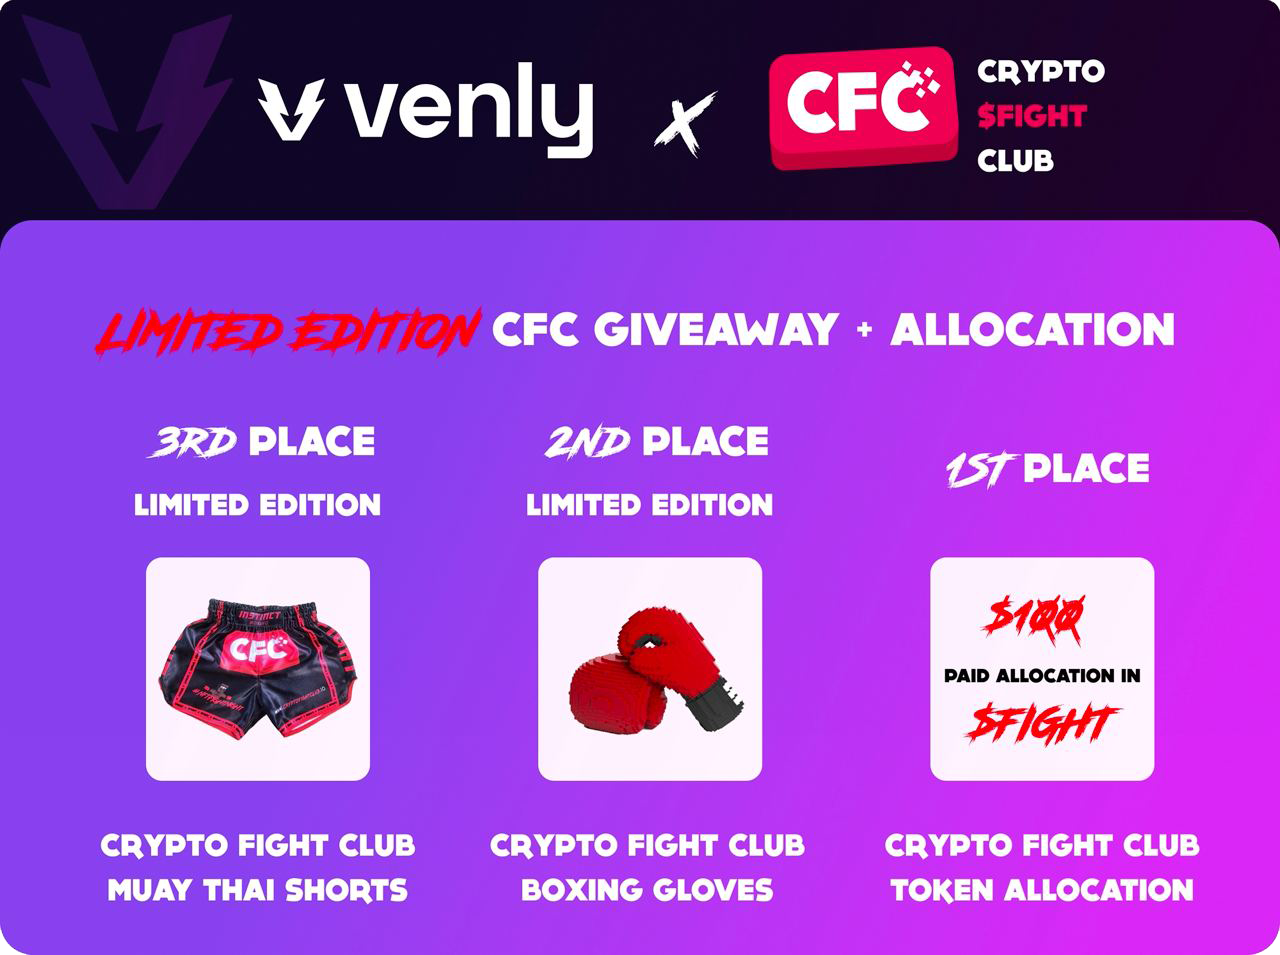 Crypto Fight Club đồng hành cùng Venly để triển khai Sự kiện Giveaway với phần thưởng Fighting Gear NFT và allocation slot